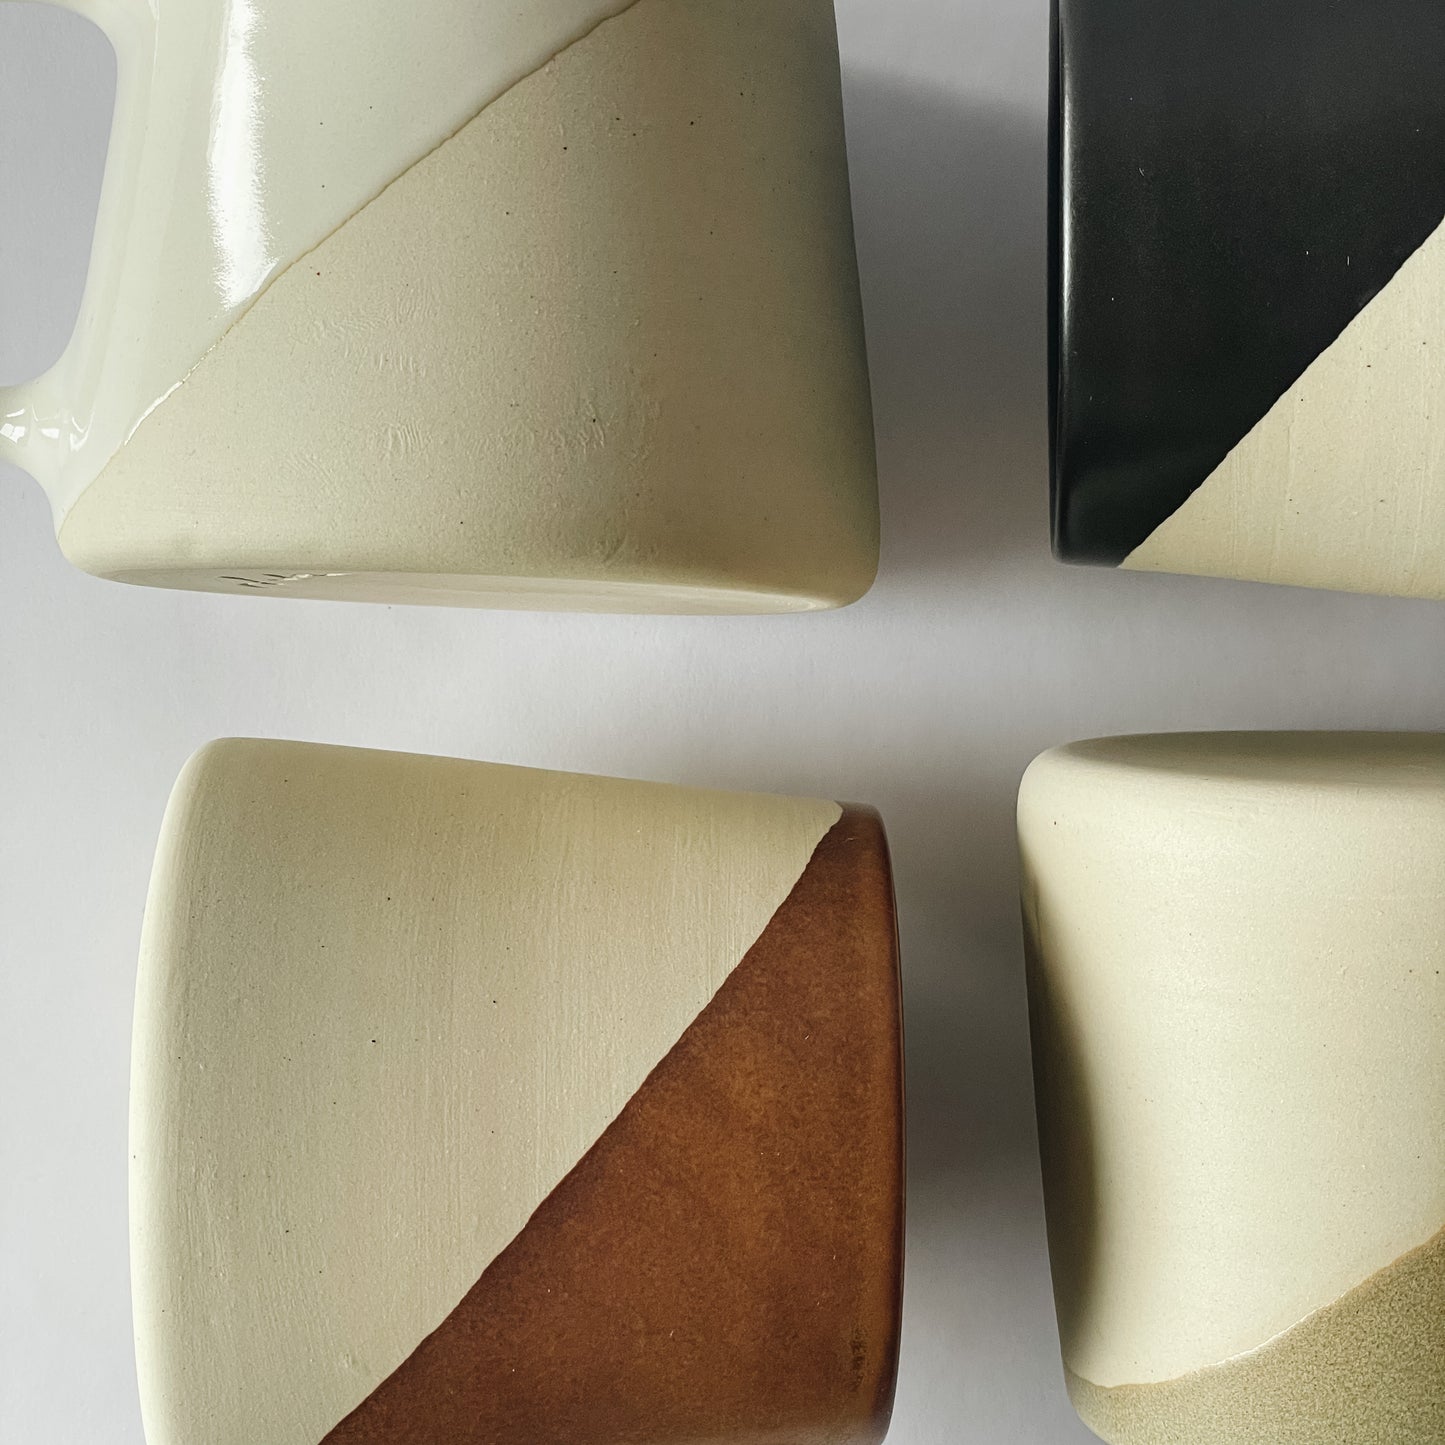 Shelby Page Ceramics Dip Mug | Satin Black